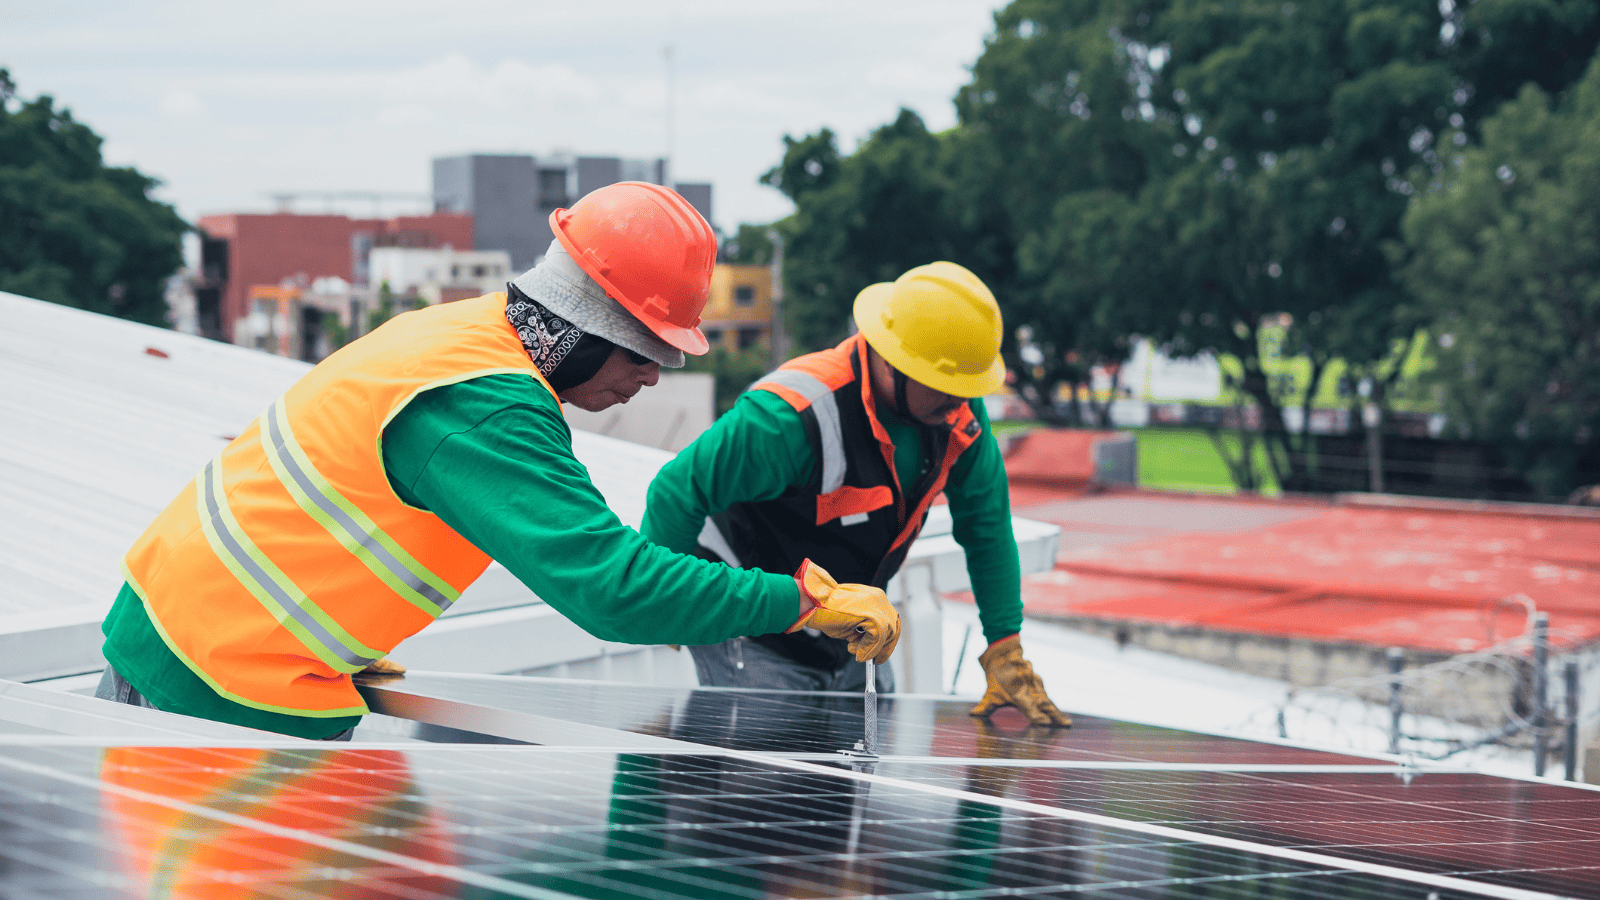 Support Legislation for Independent Community Solar